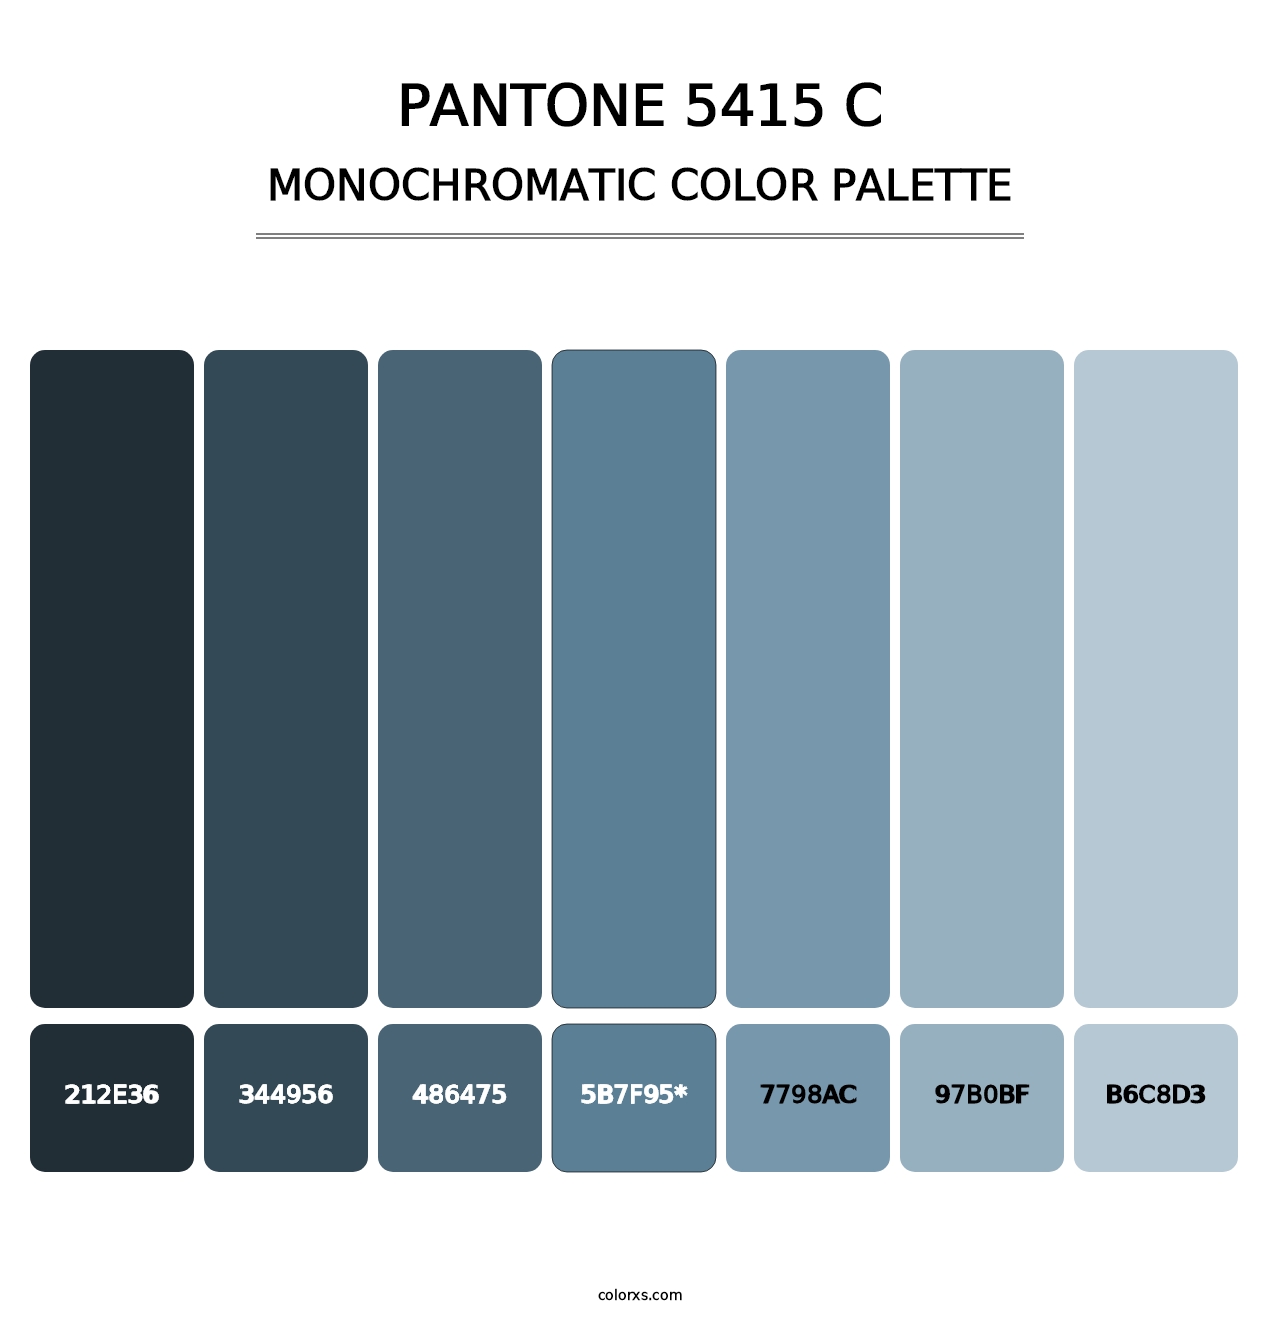 PANTONE 5415 C - Monochromatic Color Palette